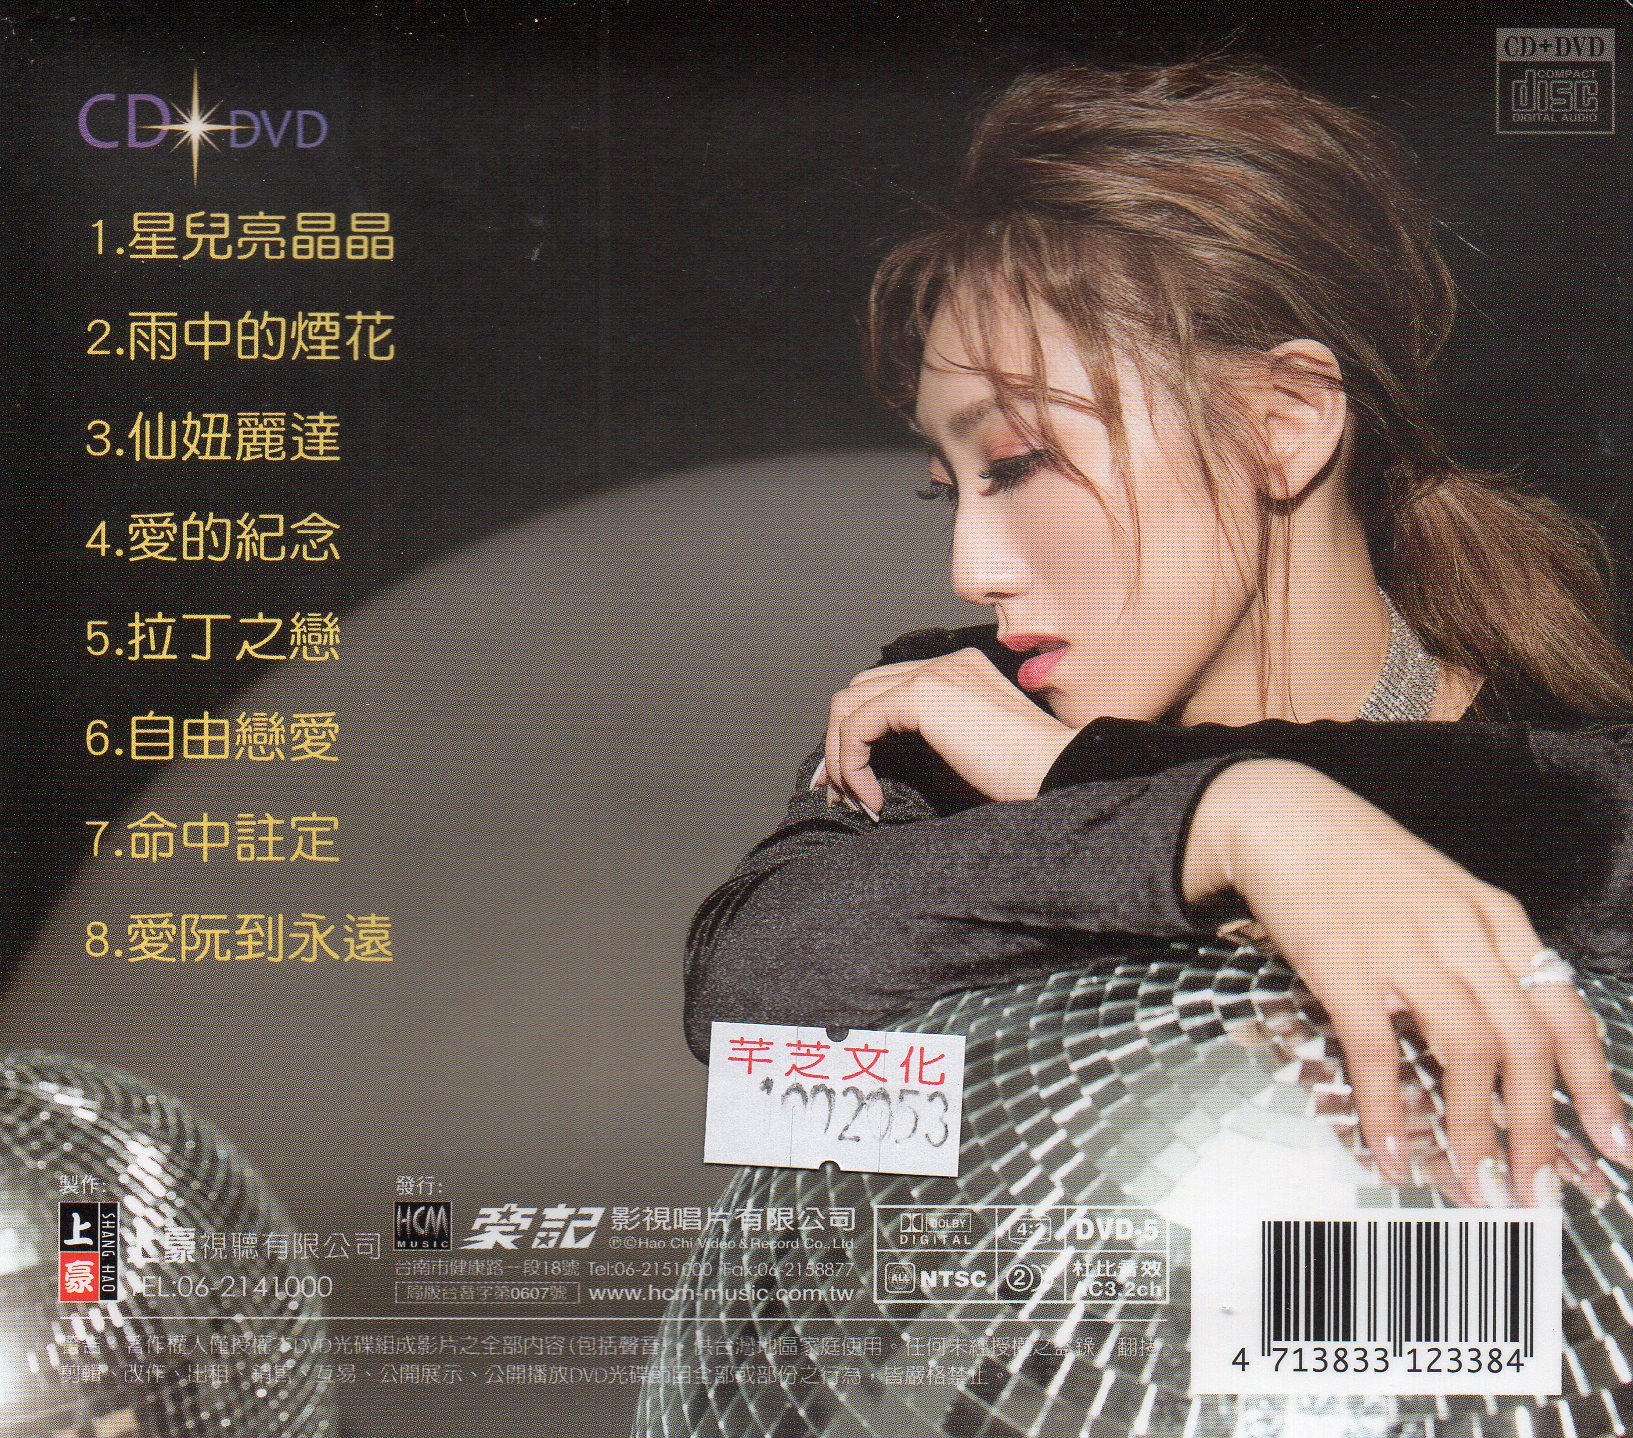 謝金晶-星兒亮晶晶DVD(上豪)(mega) MI1612579917